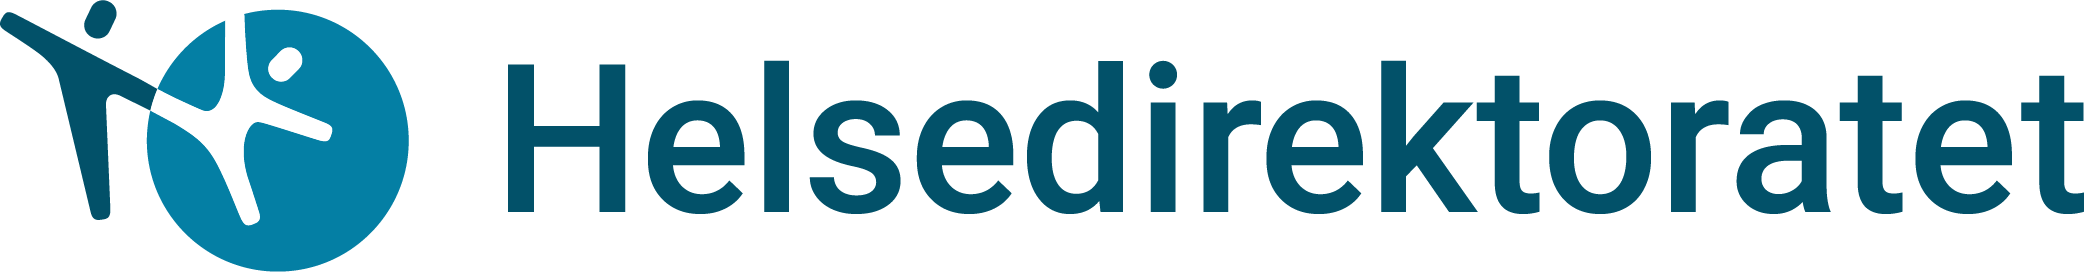 Hdir logo[1].png